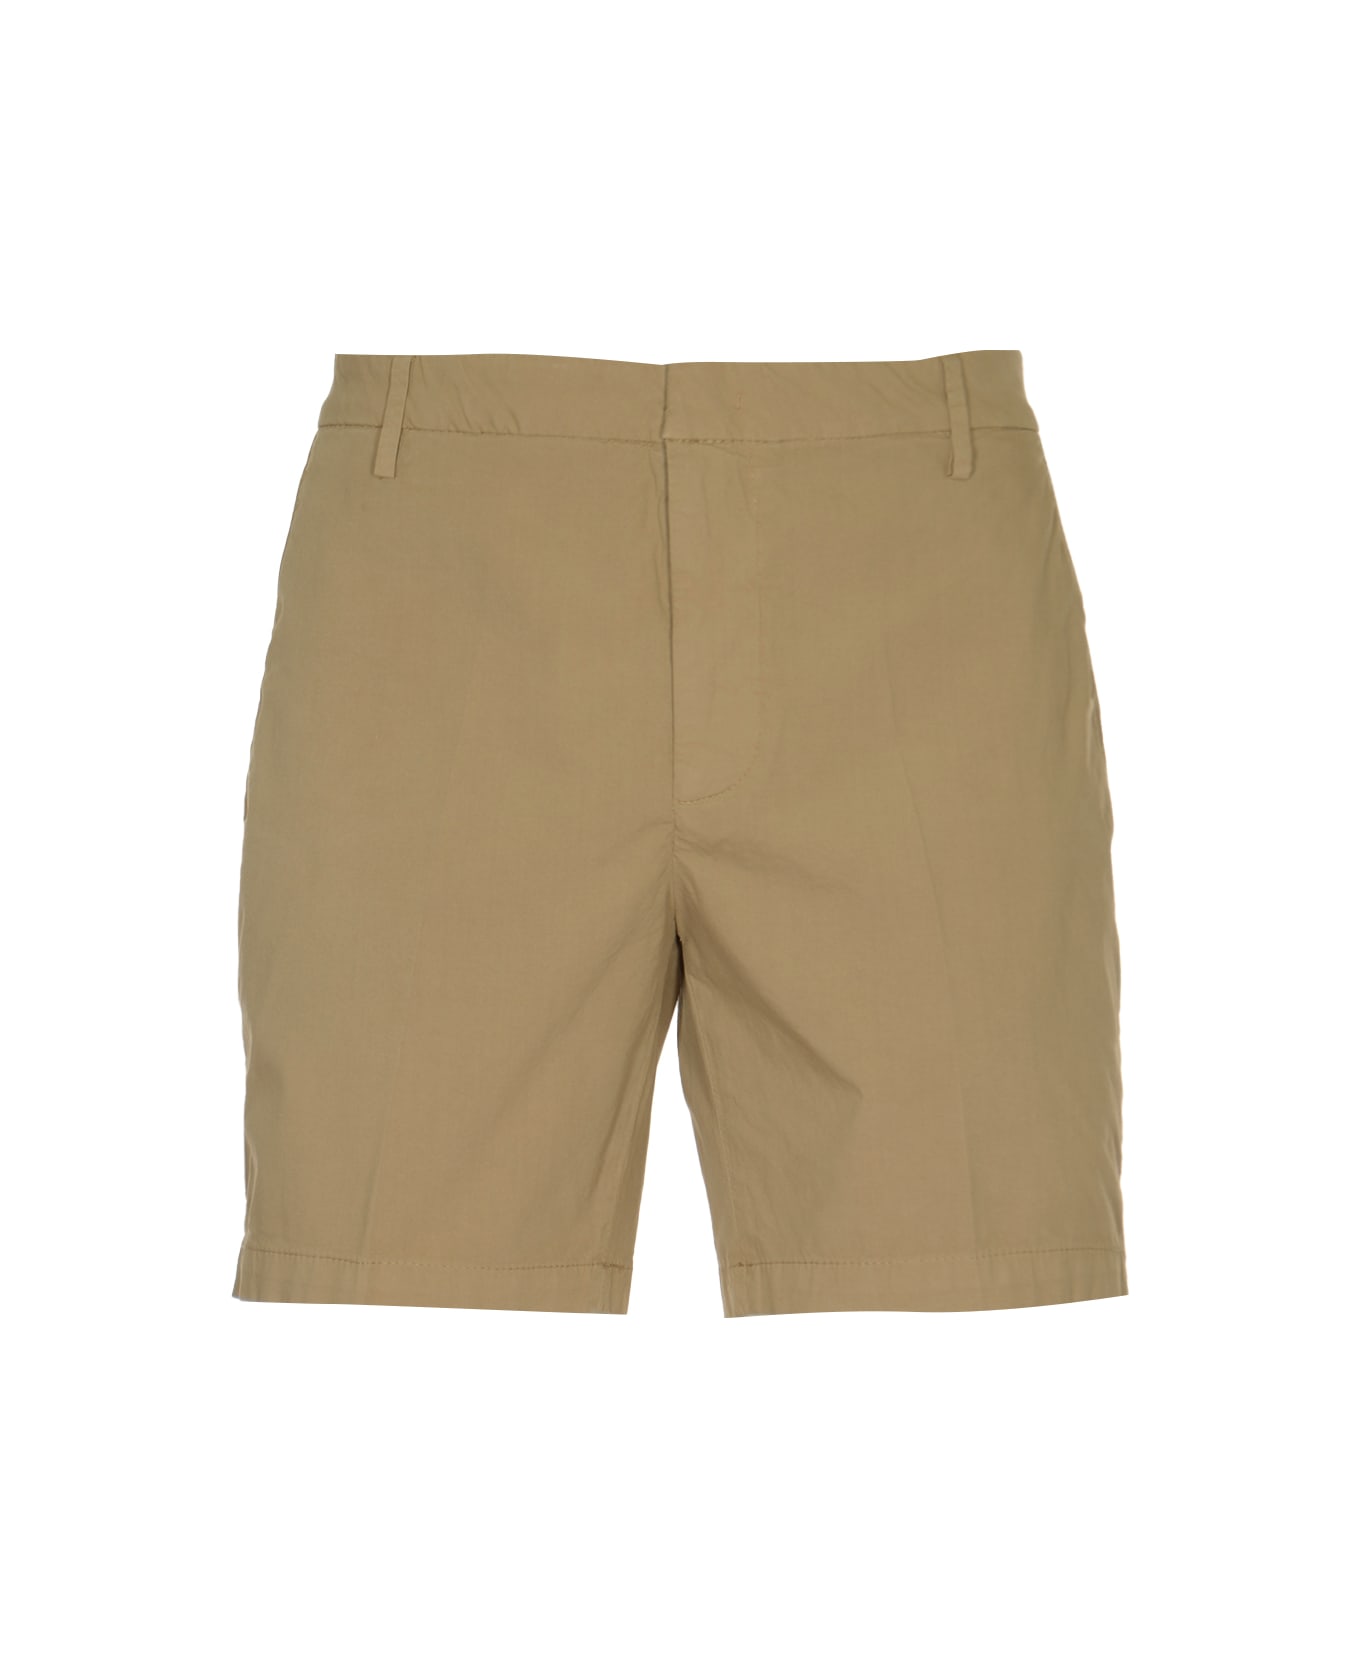 Dondup Manheim Bermuda Shorts